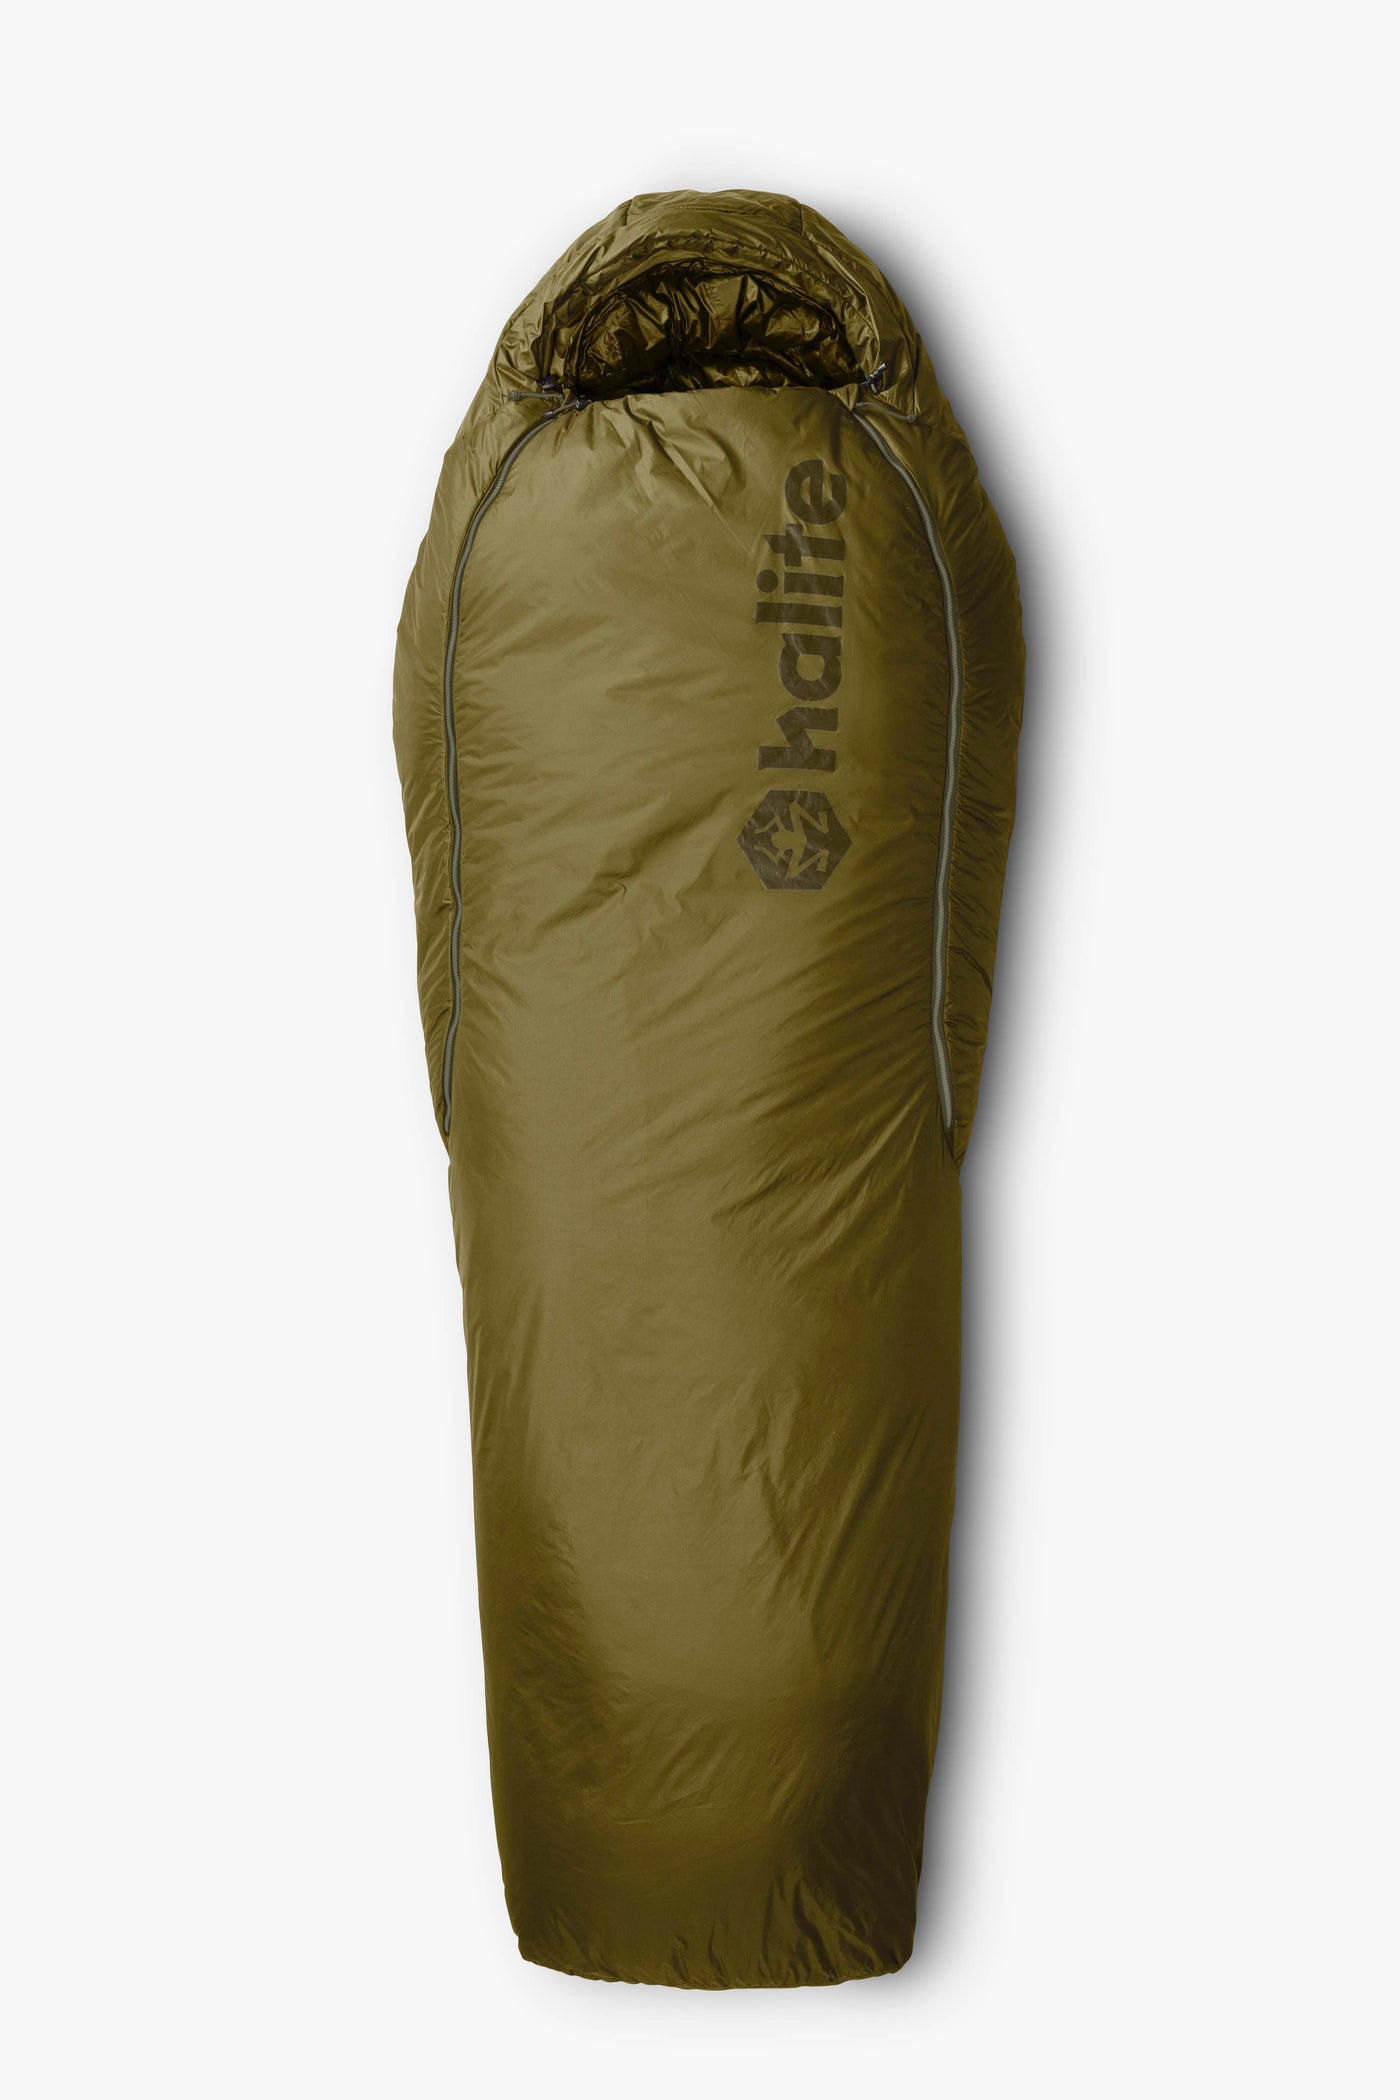 Halite Overbag Pro Sleeping Bag